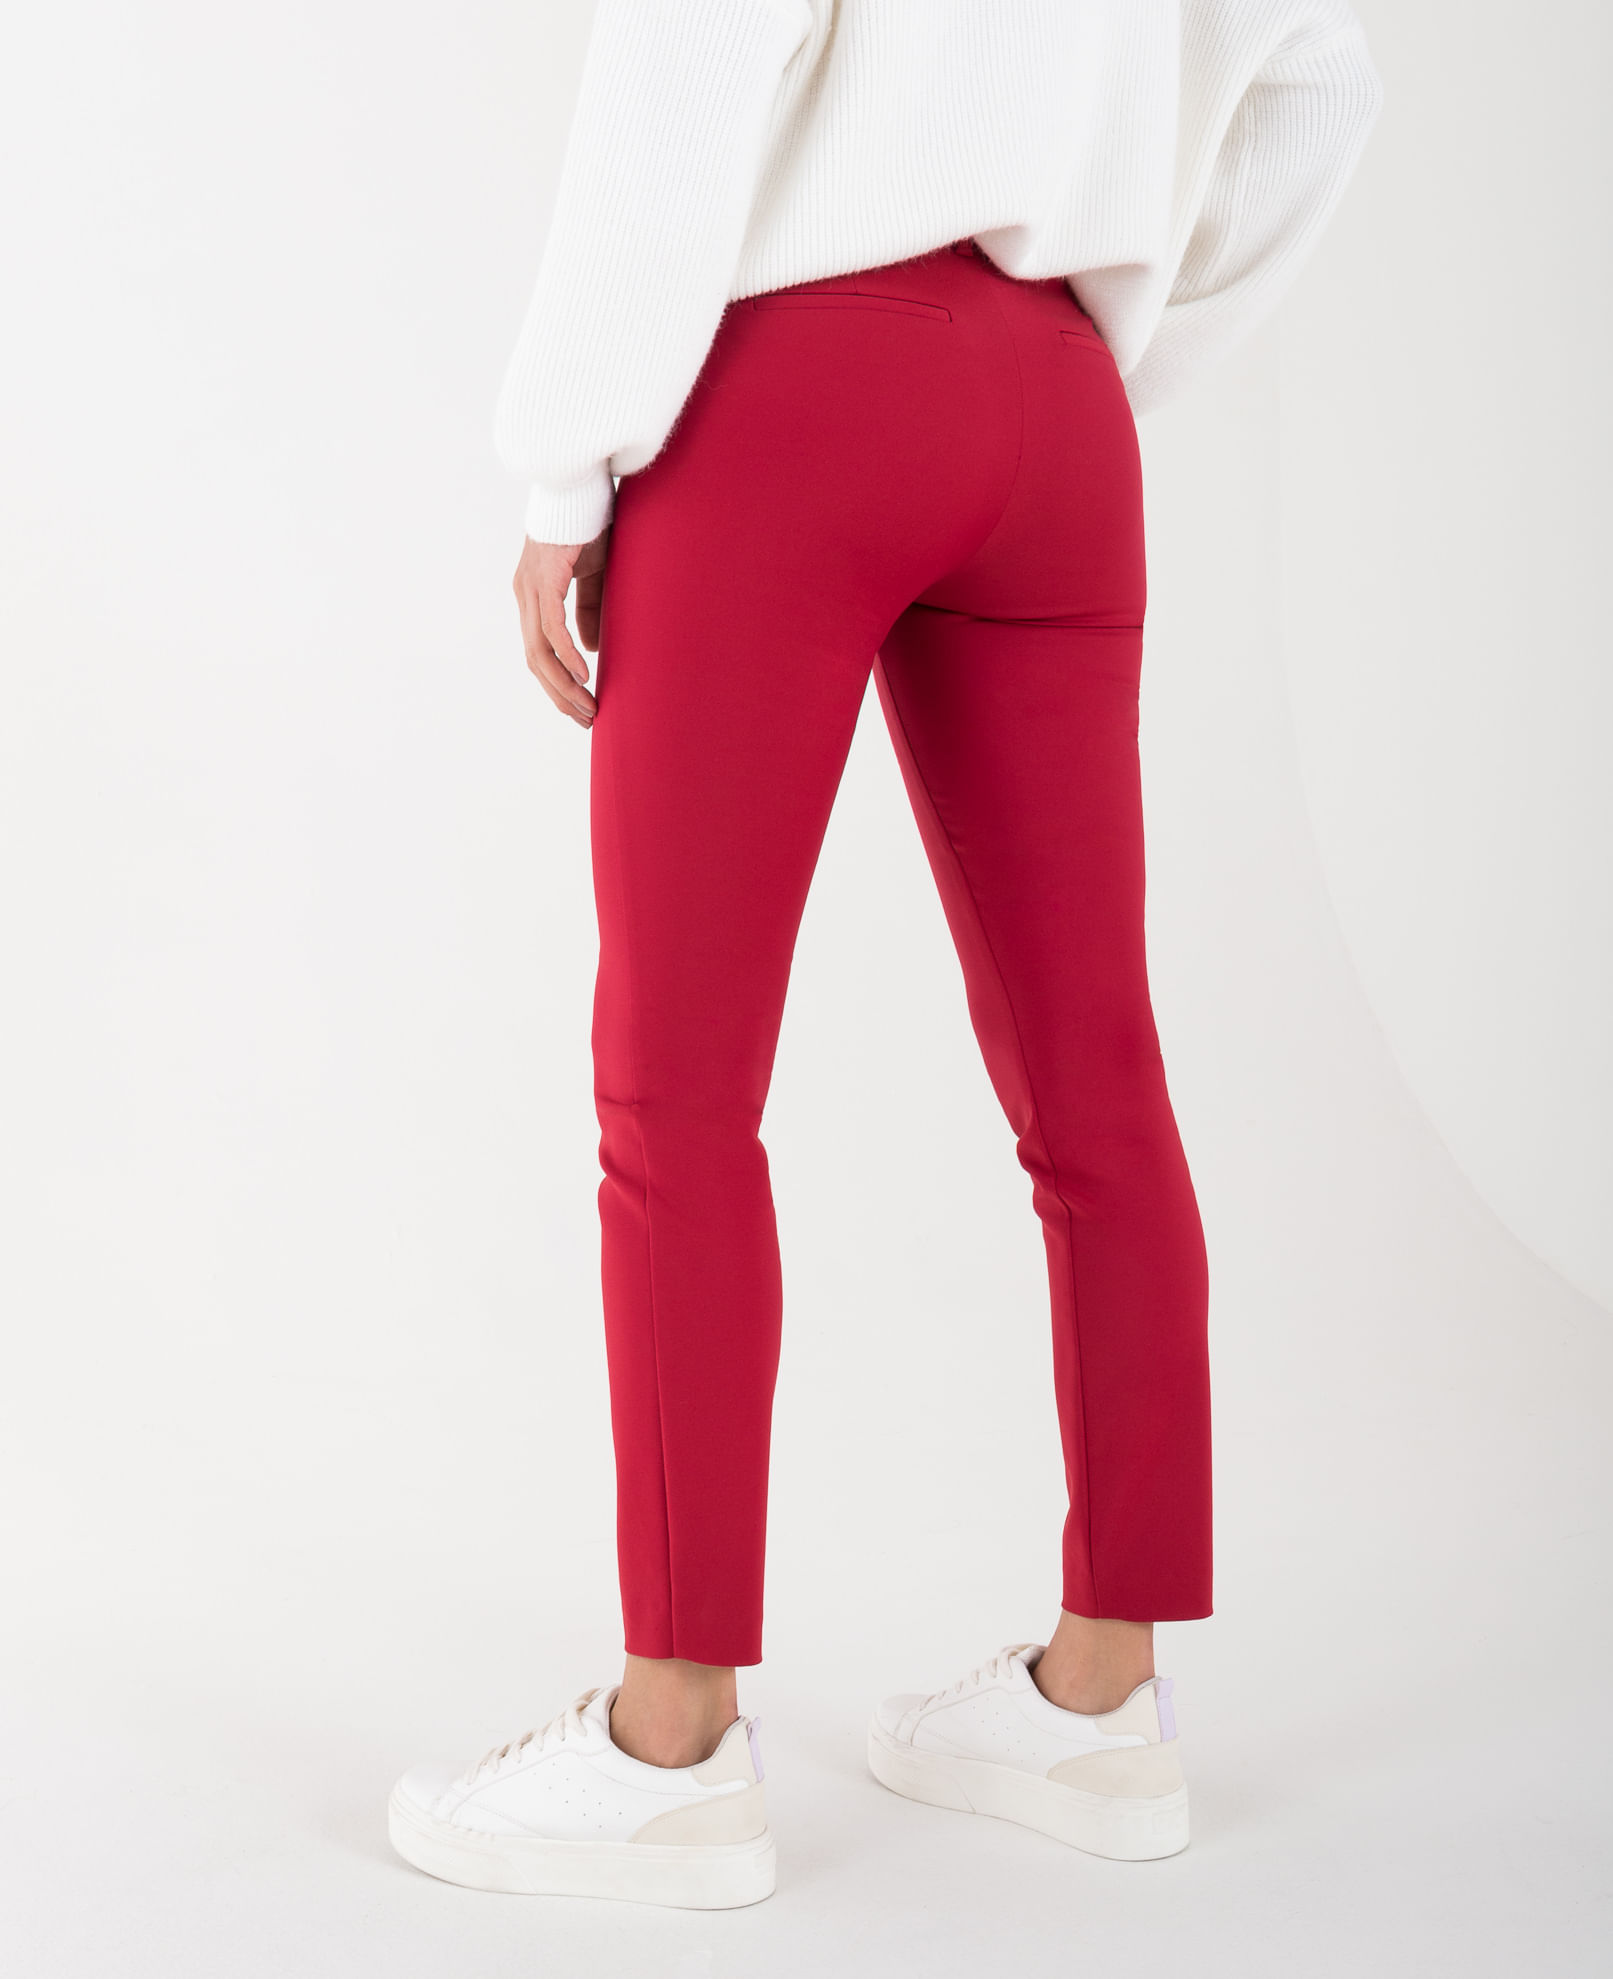 Pantalón rojo intenso slim fit con pinzas y dobladillo